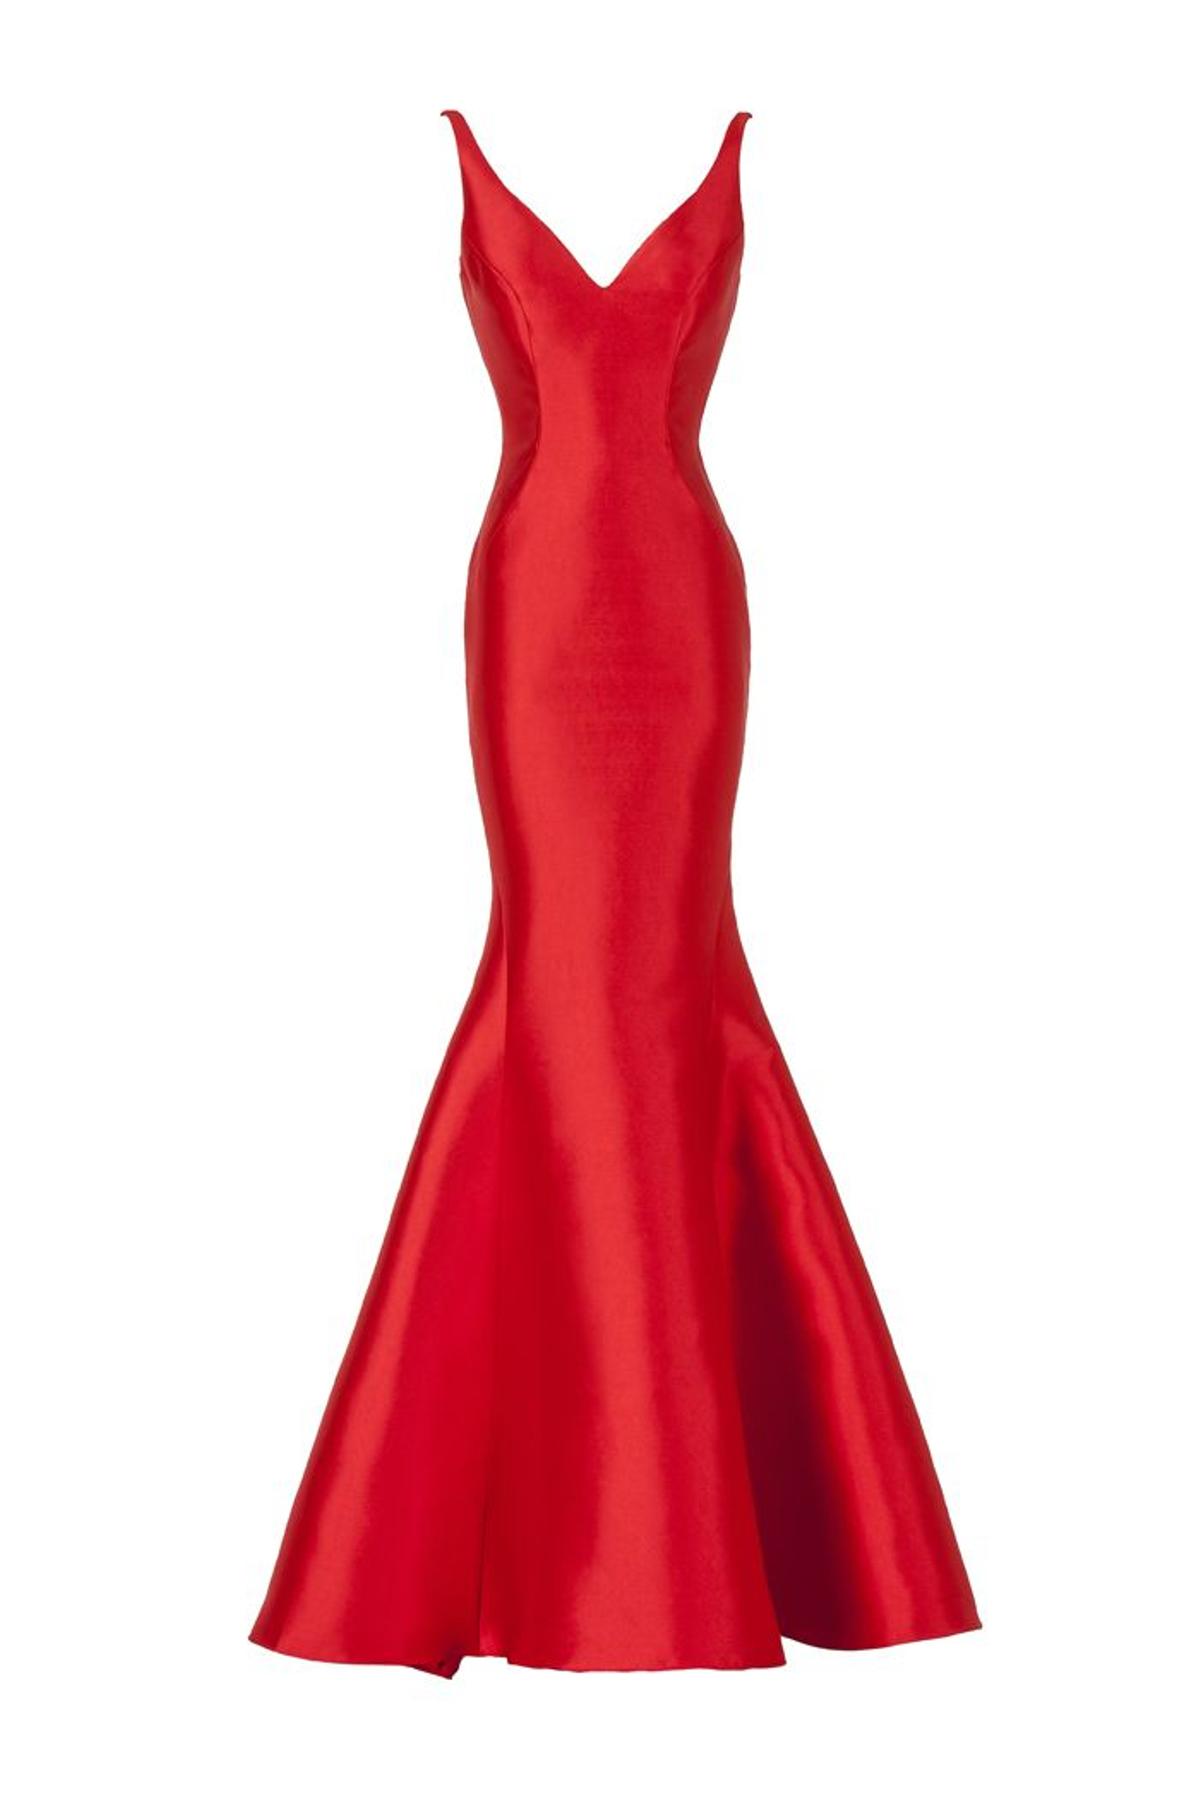 Pronovias y San Valentín: vestido rojo impoluto